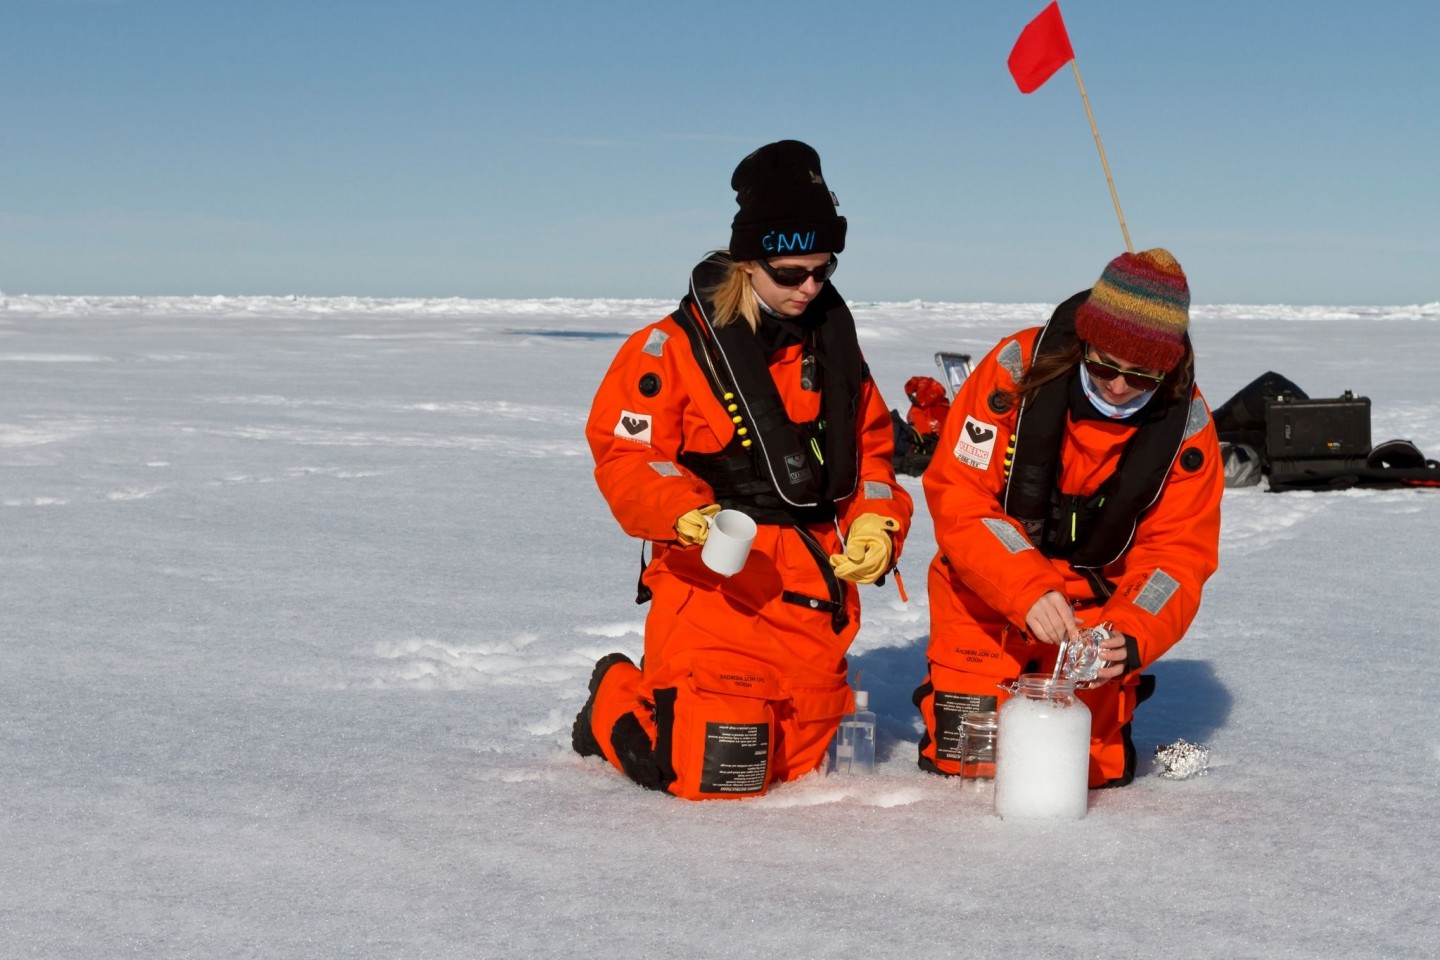 Wissenschaftler des Alfred-Wegener-Instituts nehmen Schneeproben auf dem Meereis. Selbst in der Arktis enthält der Schnee Mikroplastik.